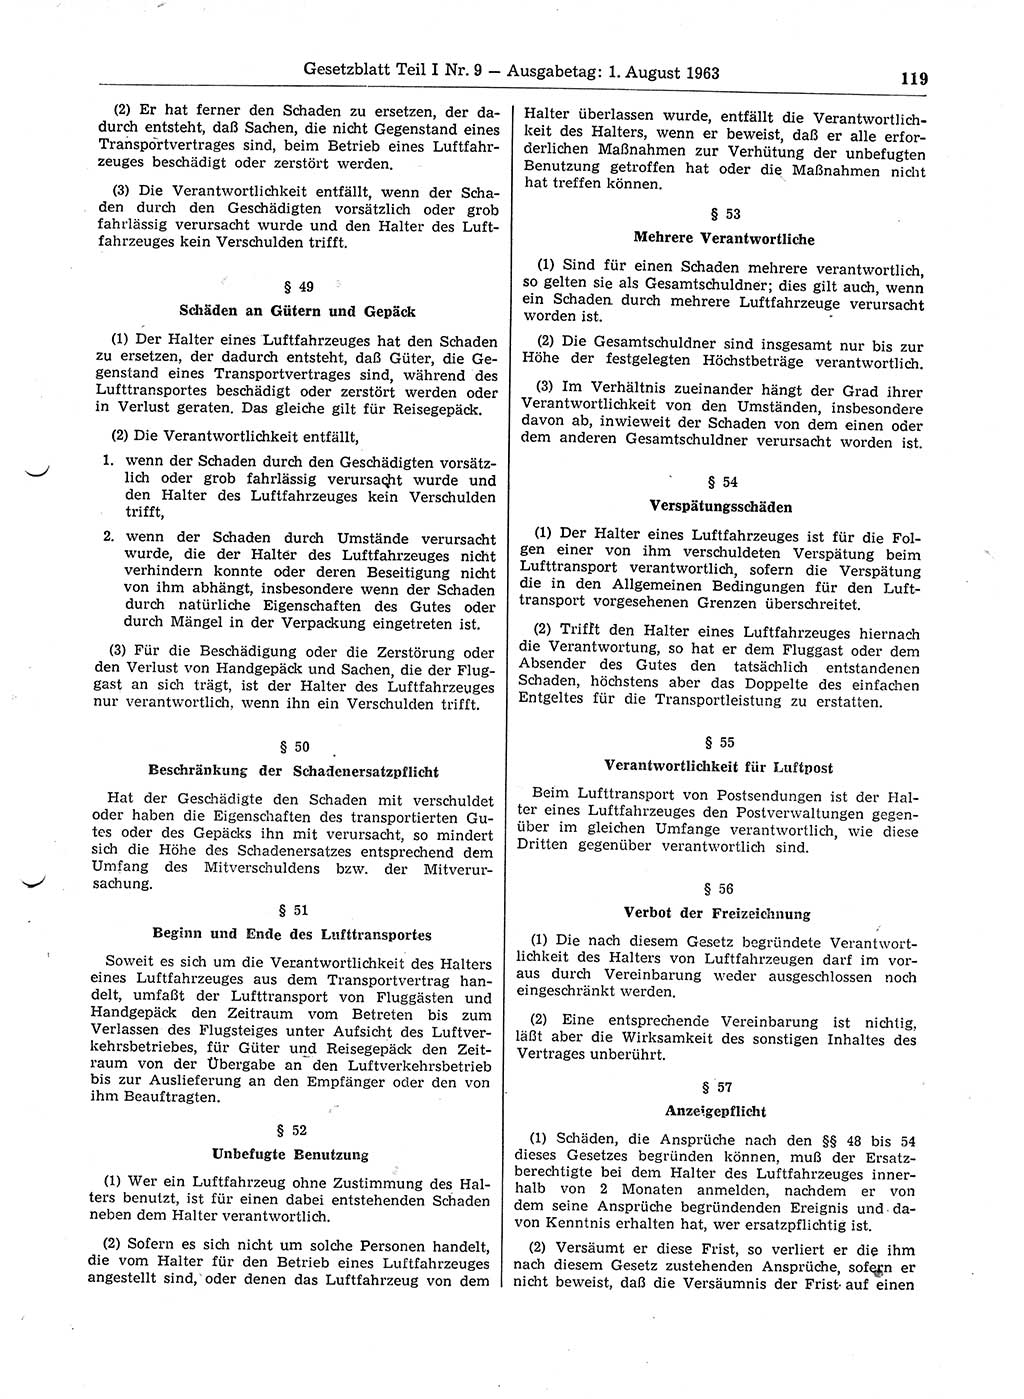 Gesetzblatt (GBl.) der Deutschen Demokratischen Republik (DDR) Teil Ⅰ 1963, Seite 119 (GBl. DDR Ⅰ 1963, S. 119)